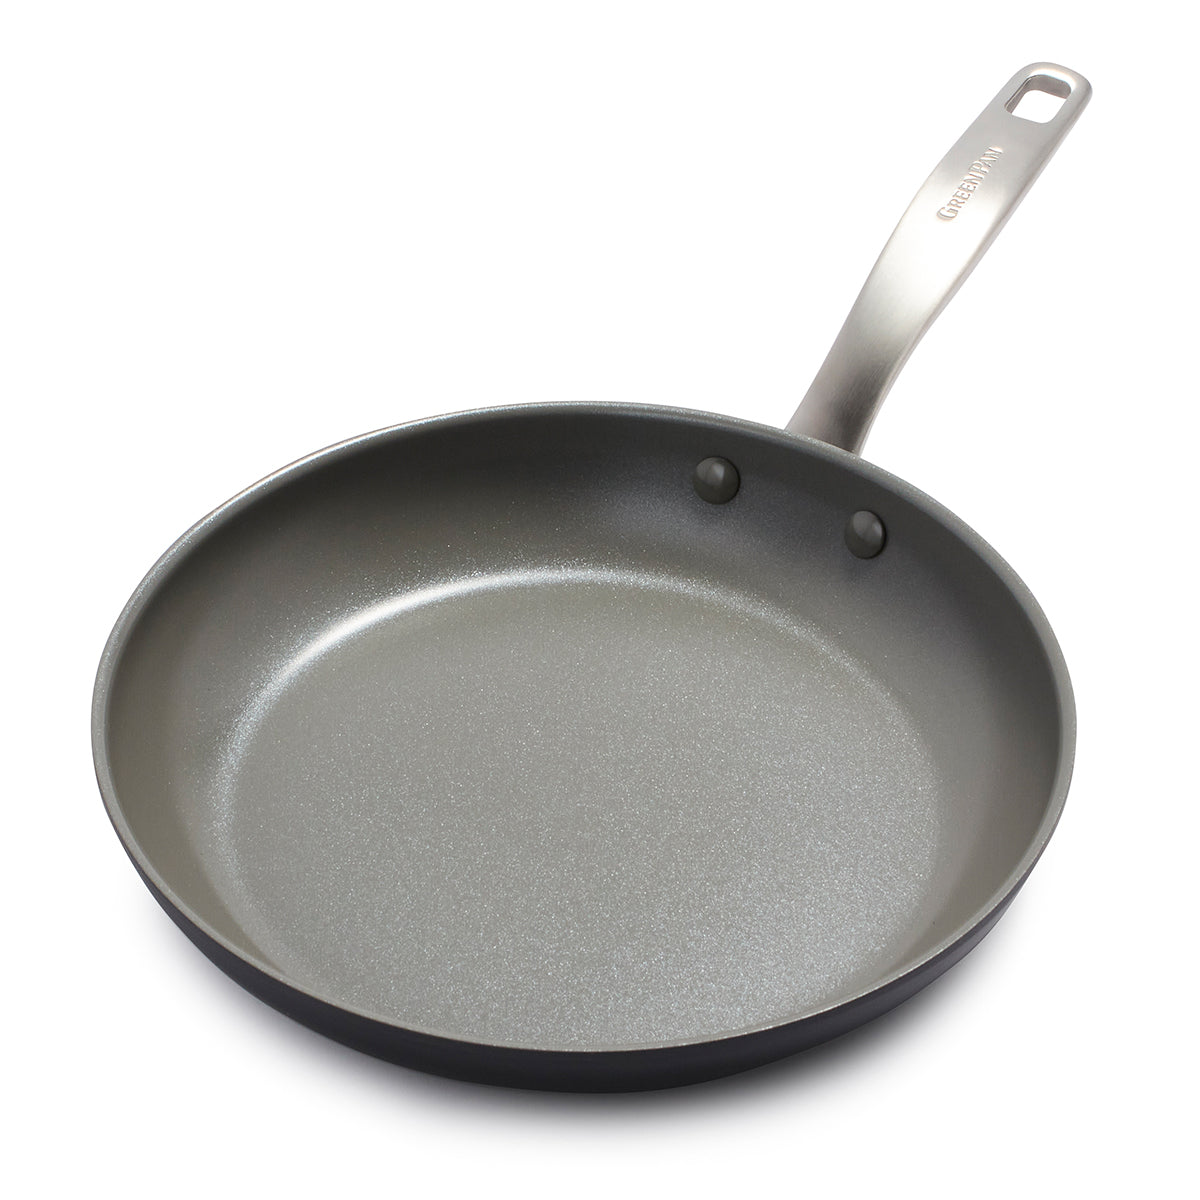 Premier Non-Stick Fry Pan Large | Buy Non-Stick Fry Pan